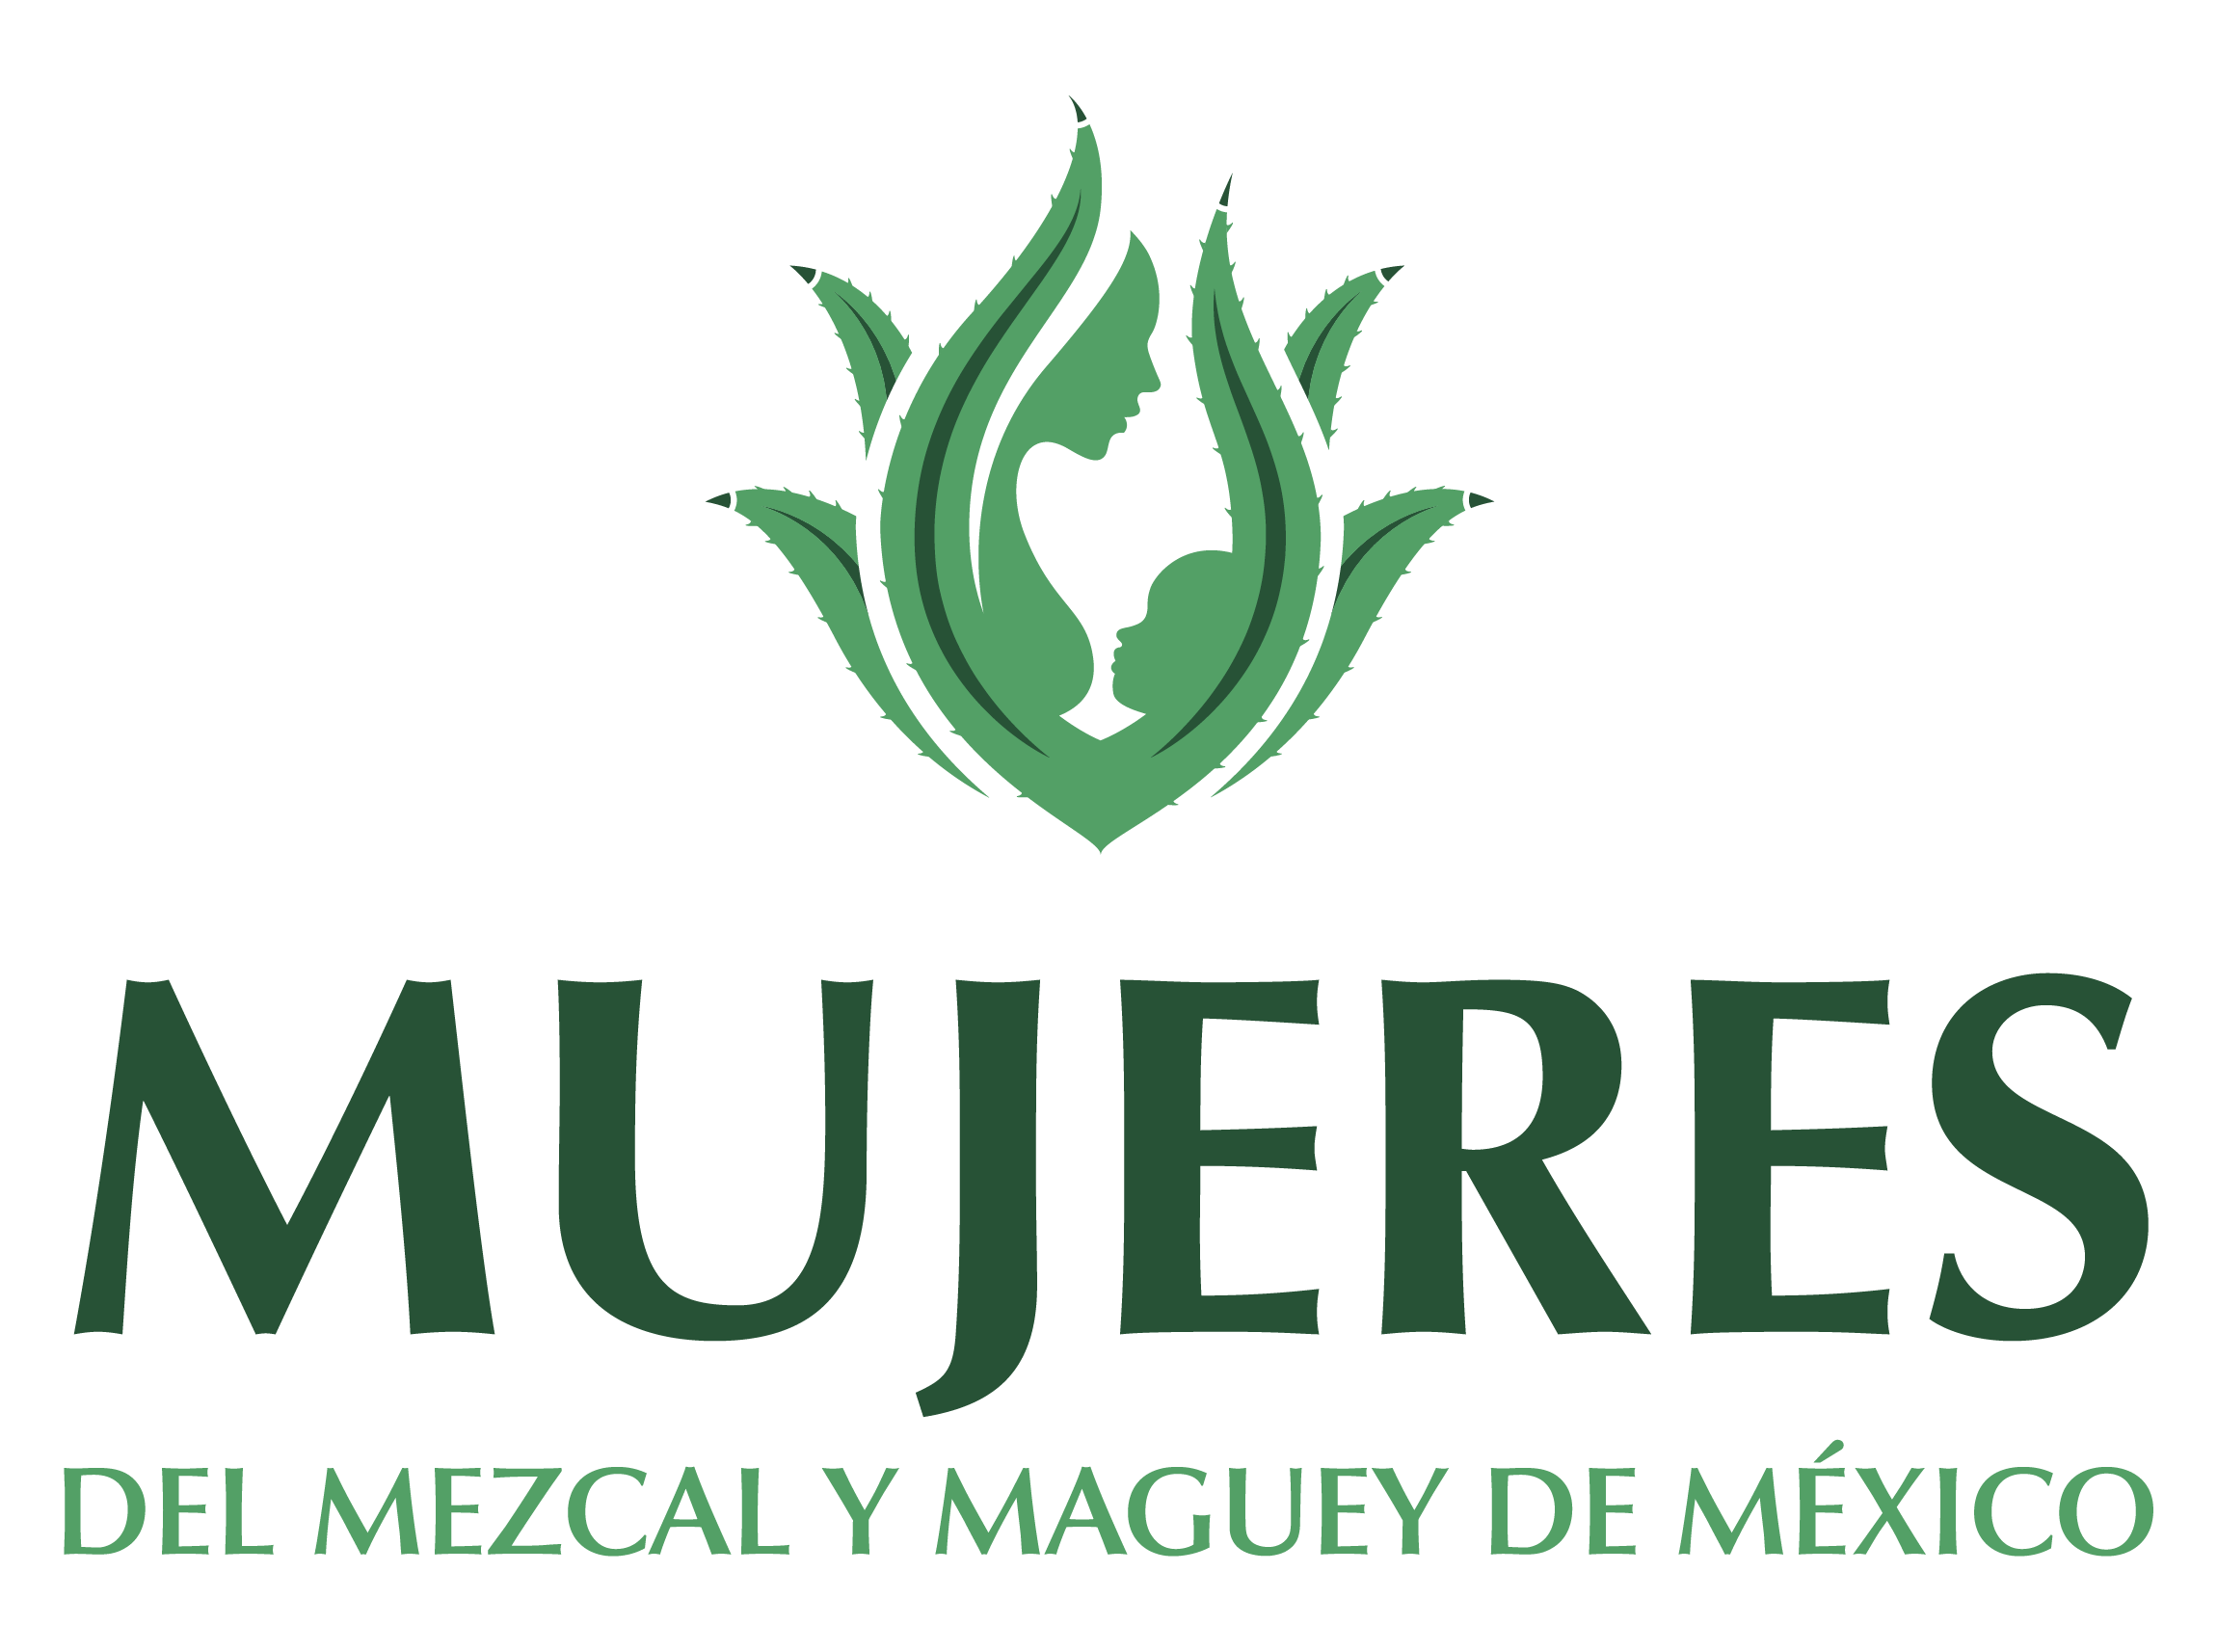 Mujeres del mezcal y maguey de Mexico